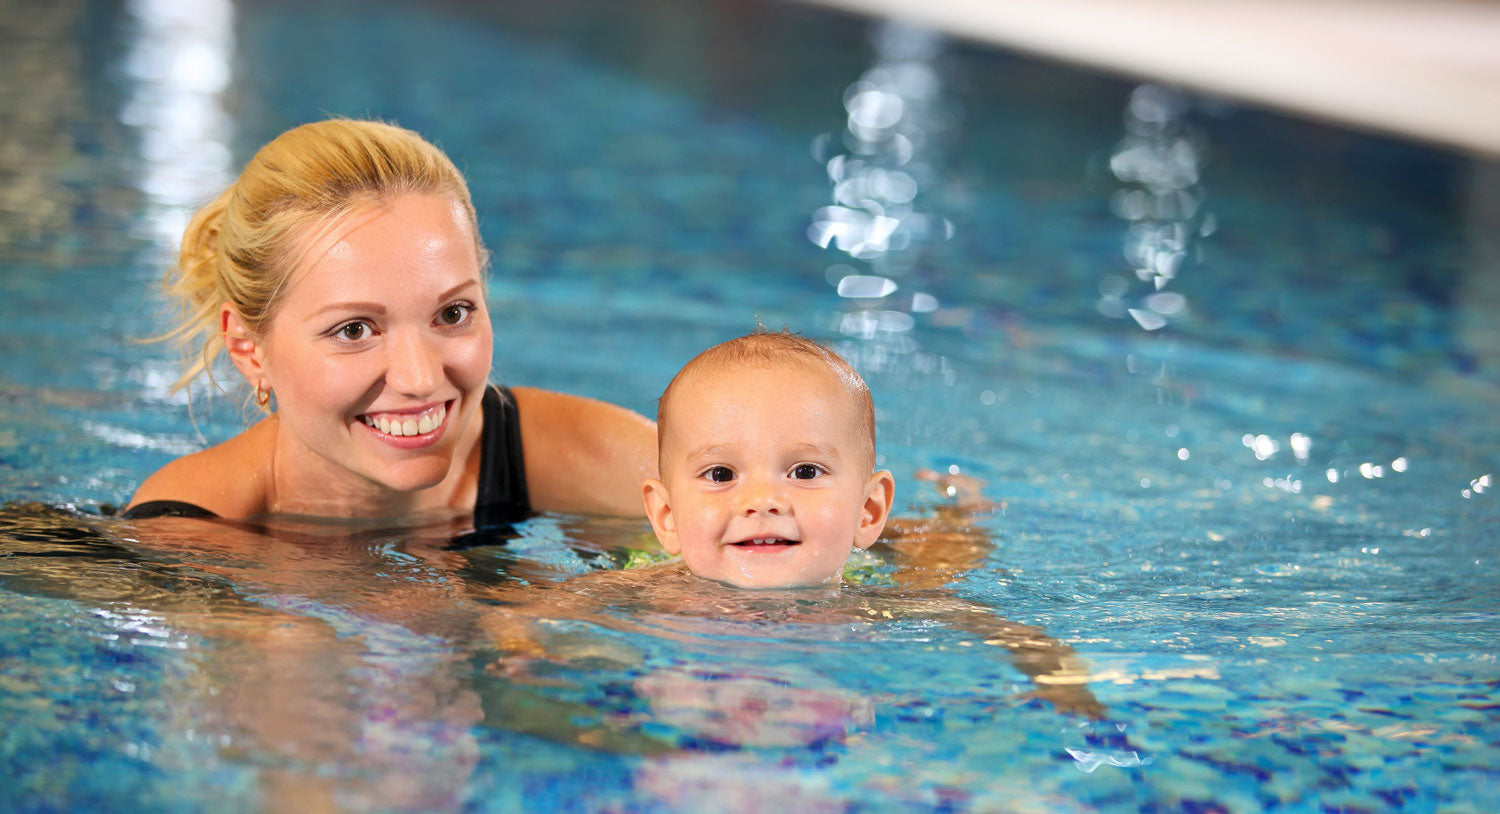 Instructor teaching baby to swim